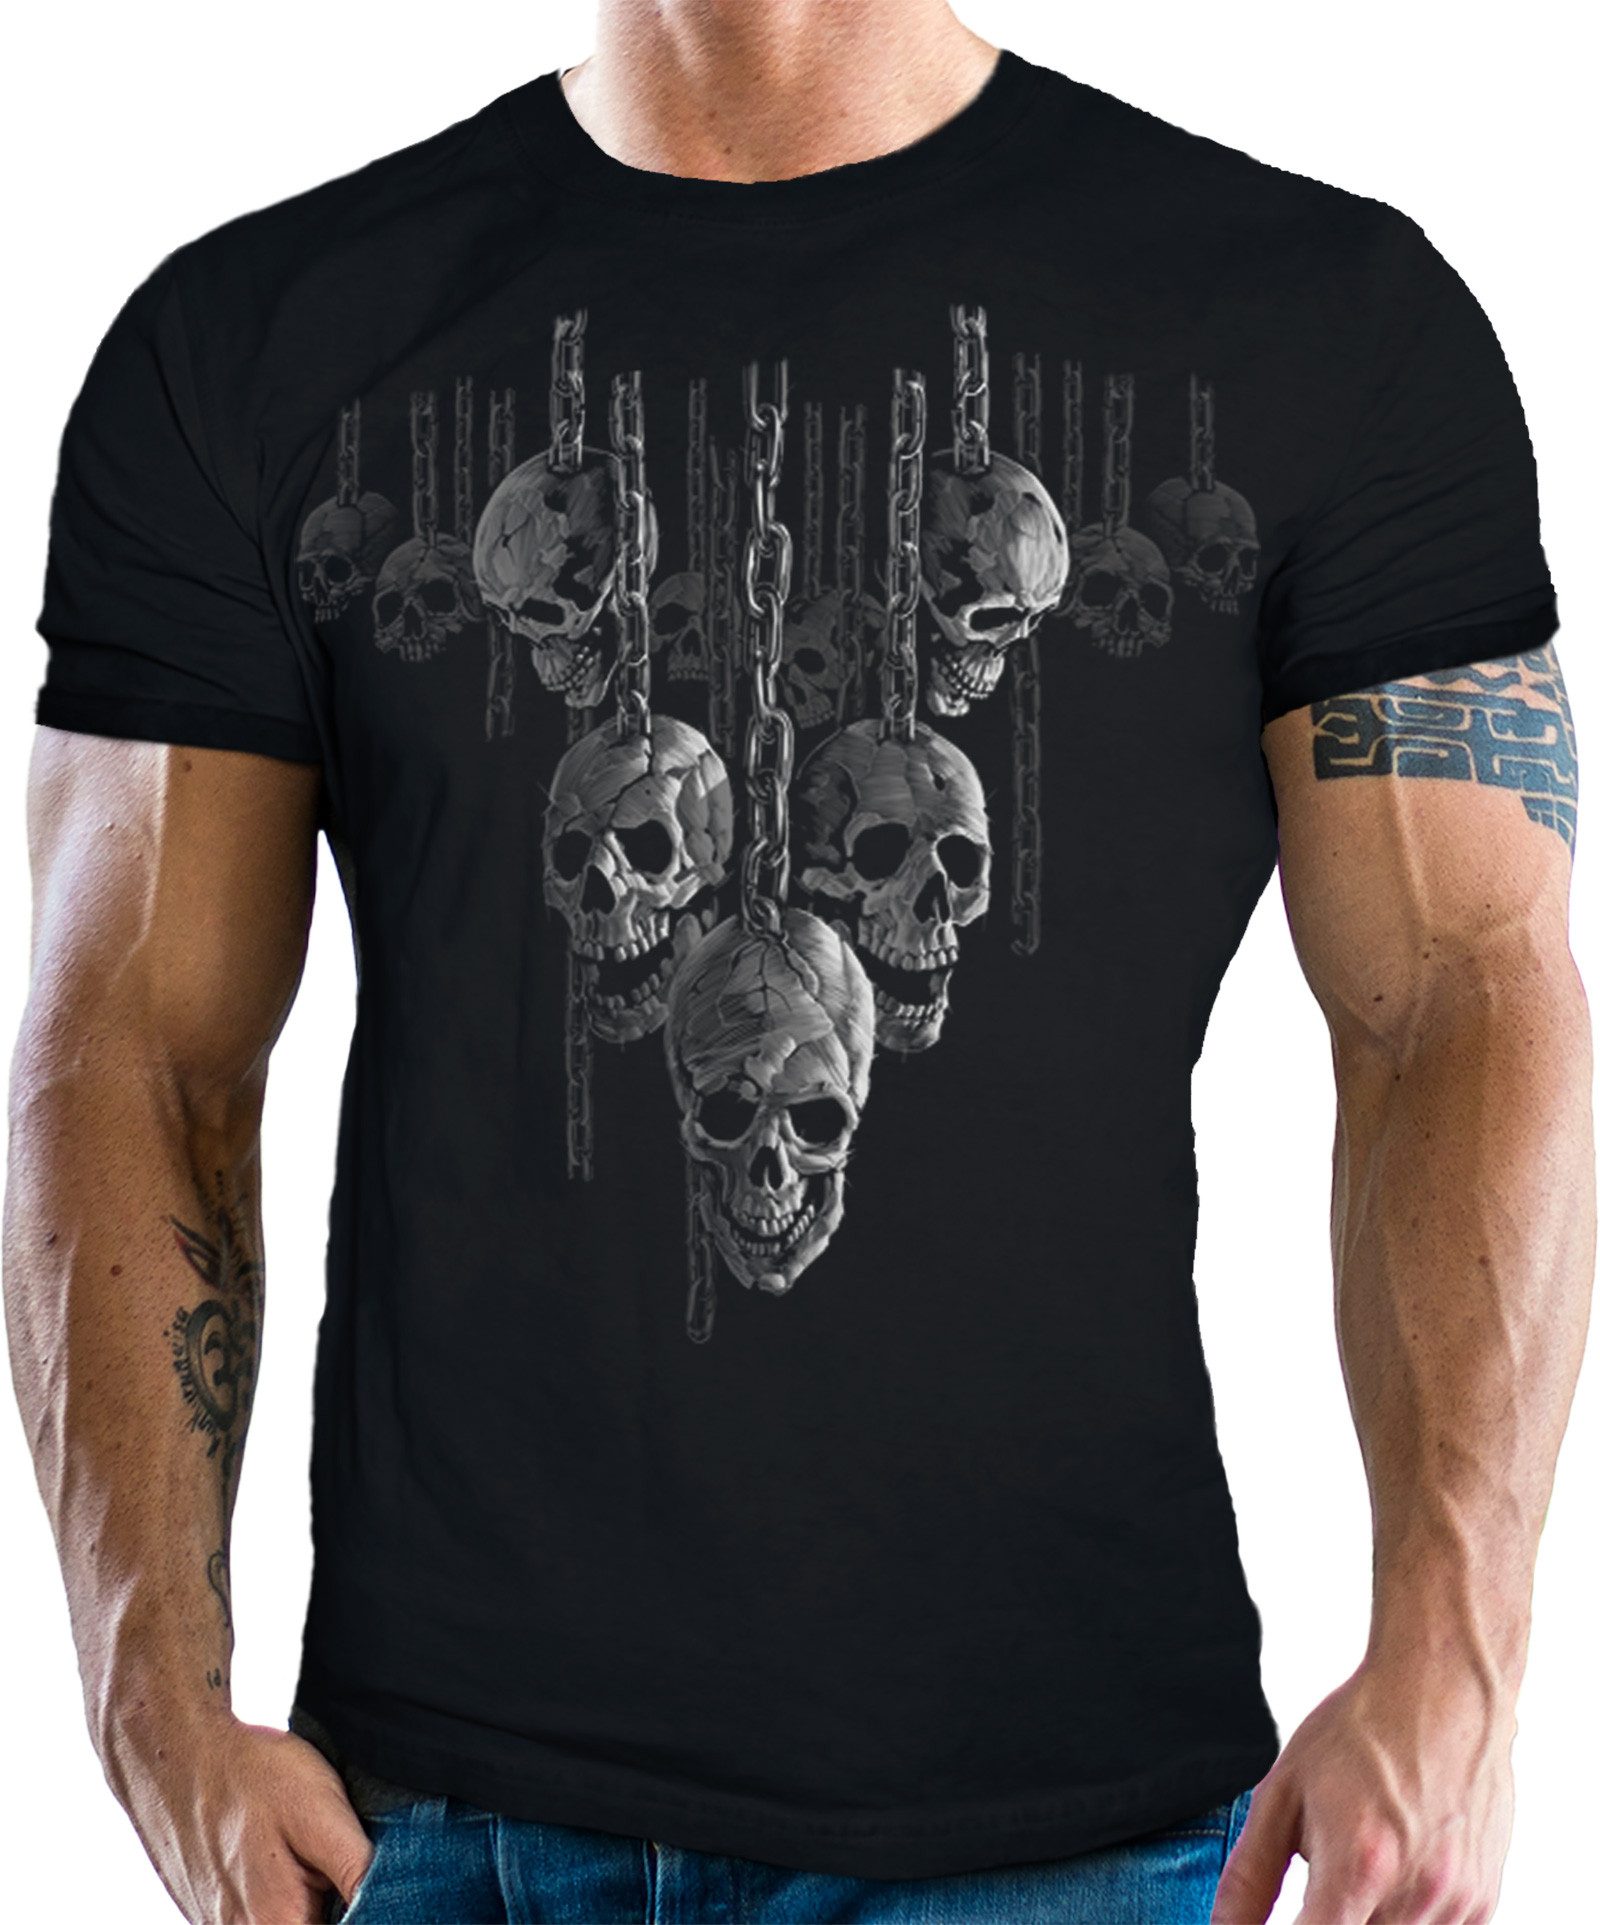 LOBO NEGRO® T-Shirt für Occult Gothic Dark Fans: Chained Skulls